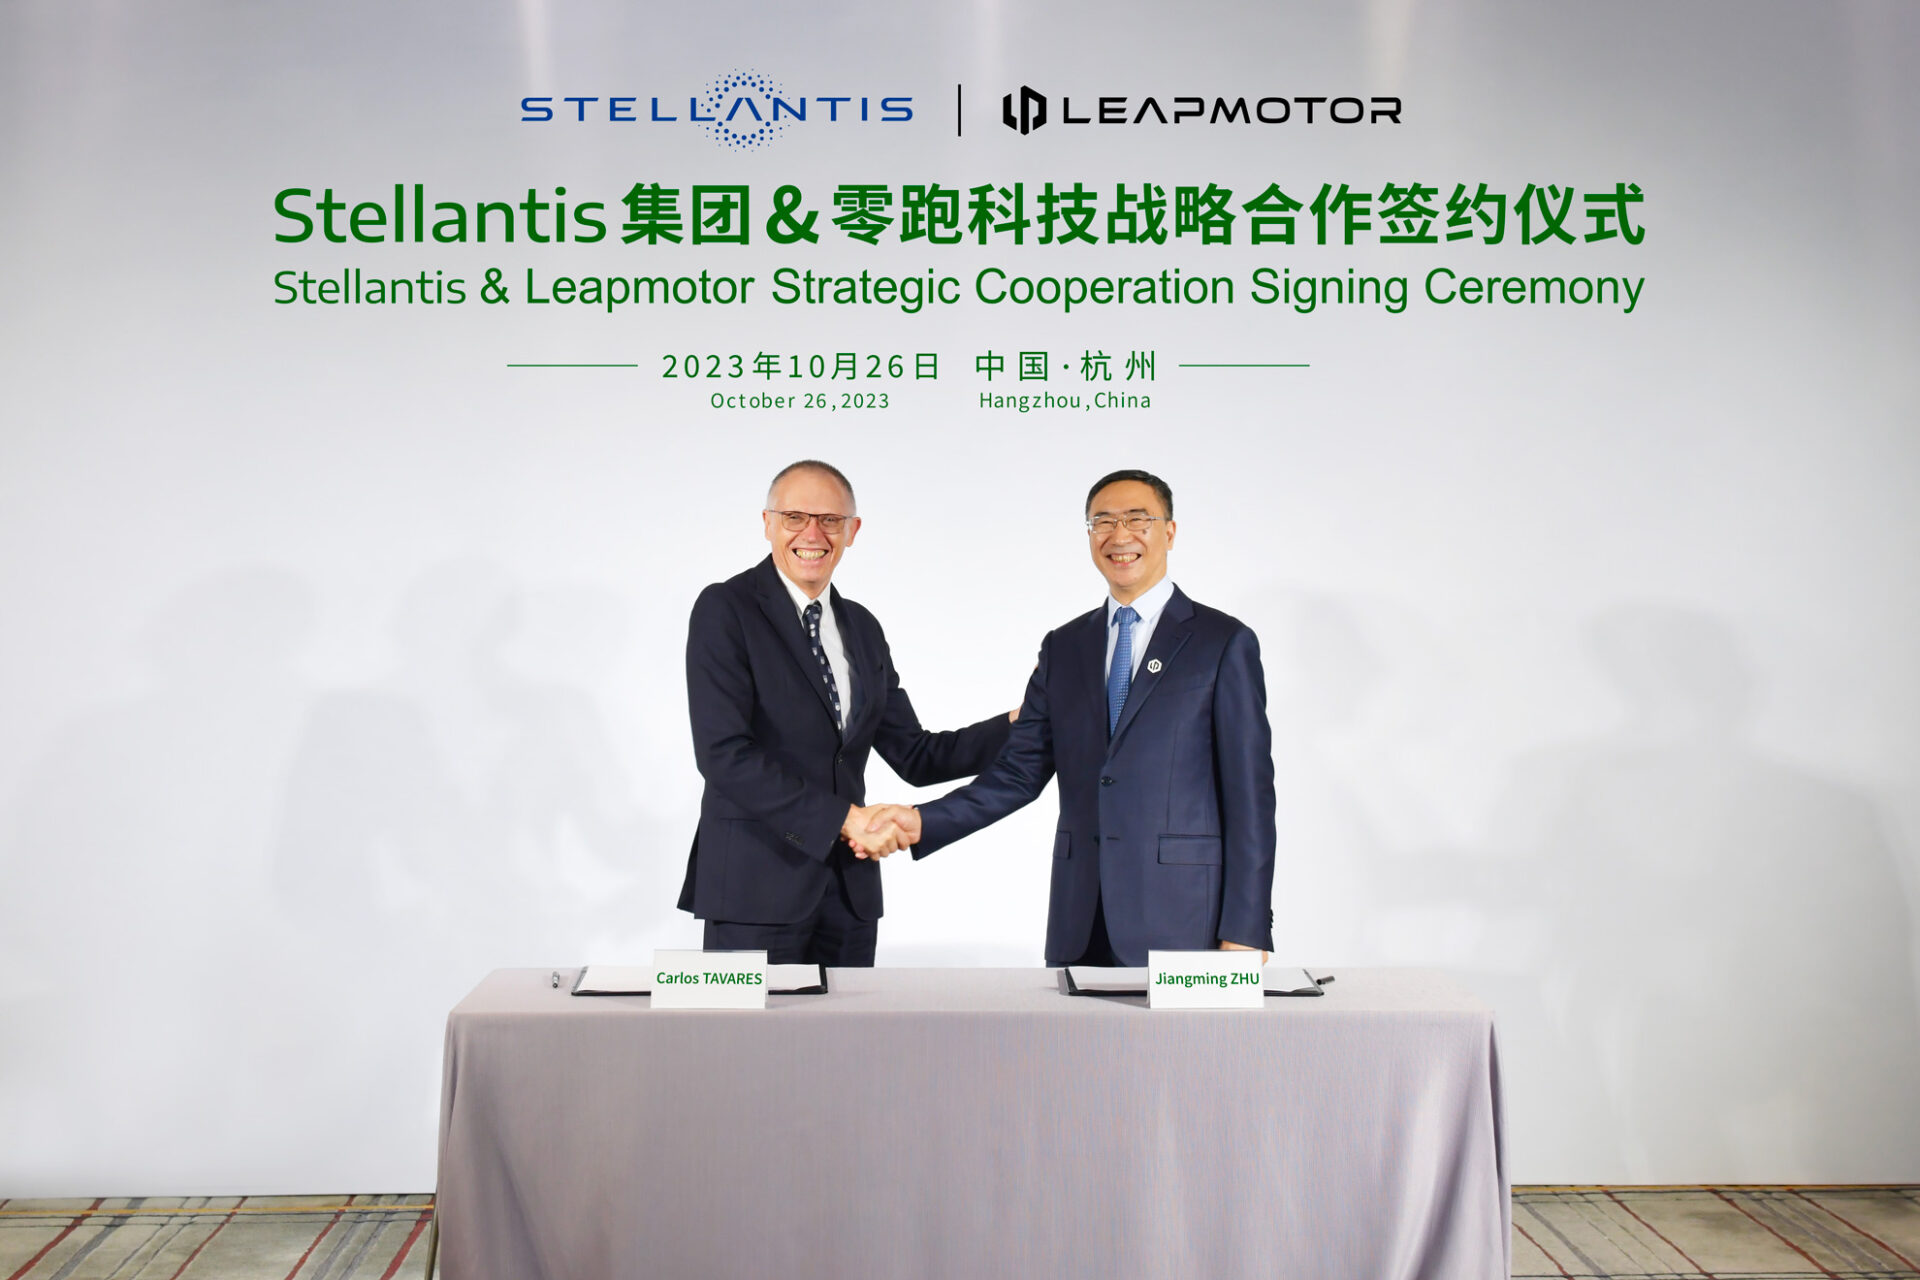 Stellantis e Leapmotor hanno deciso di creare una partnership strategica a livello internazionale